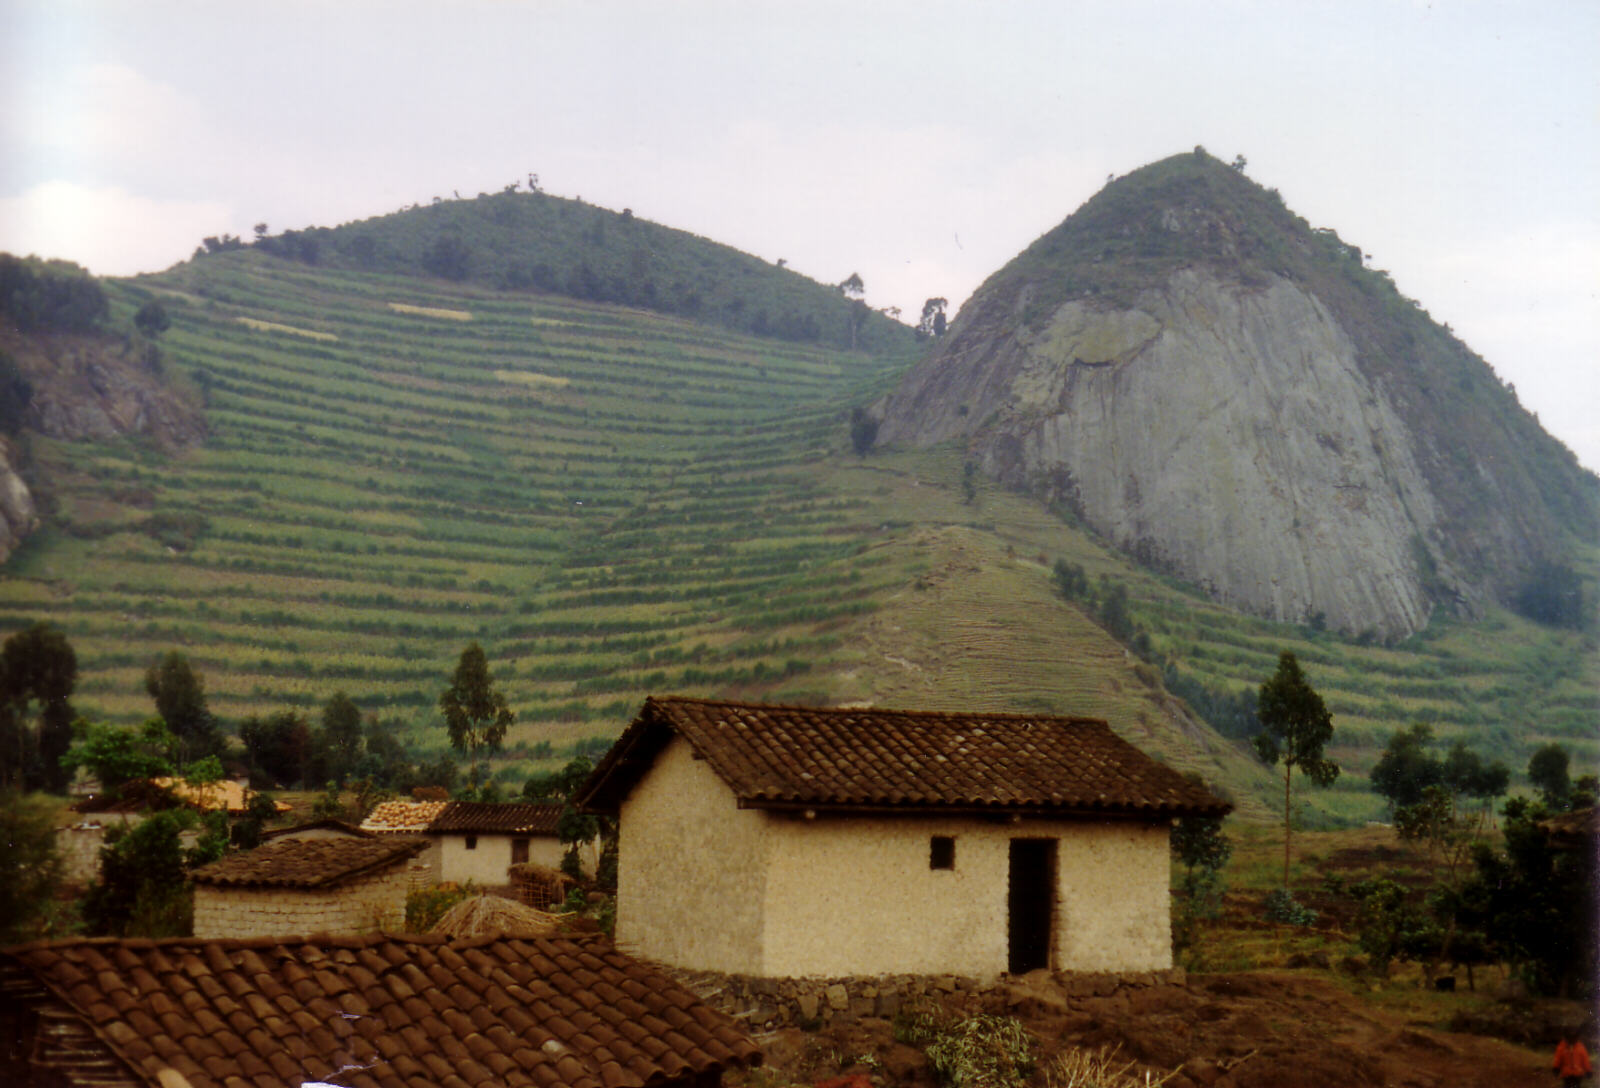 A farm by the road in Rwanda